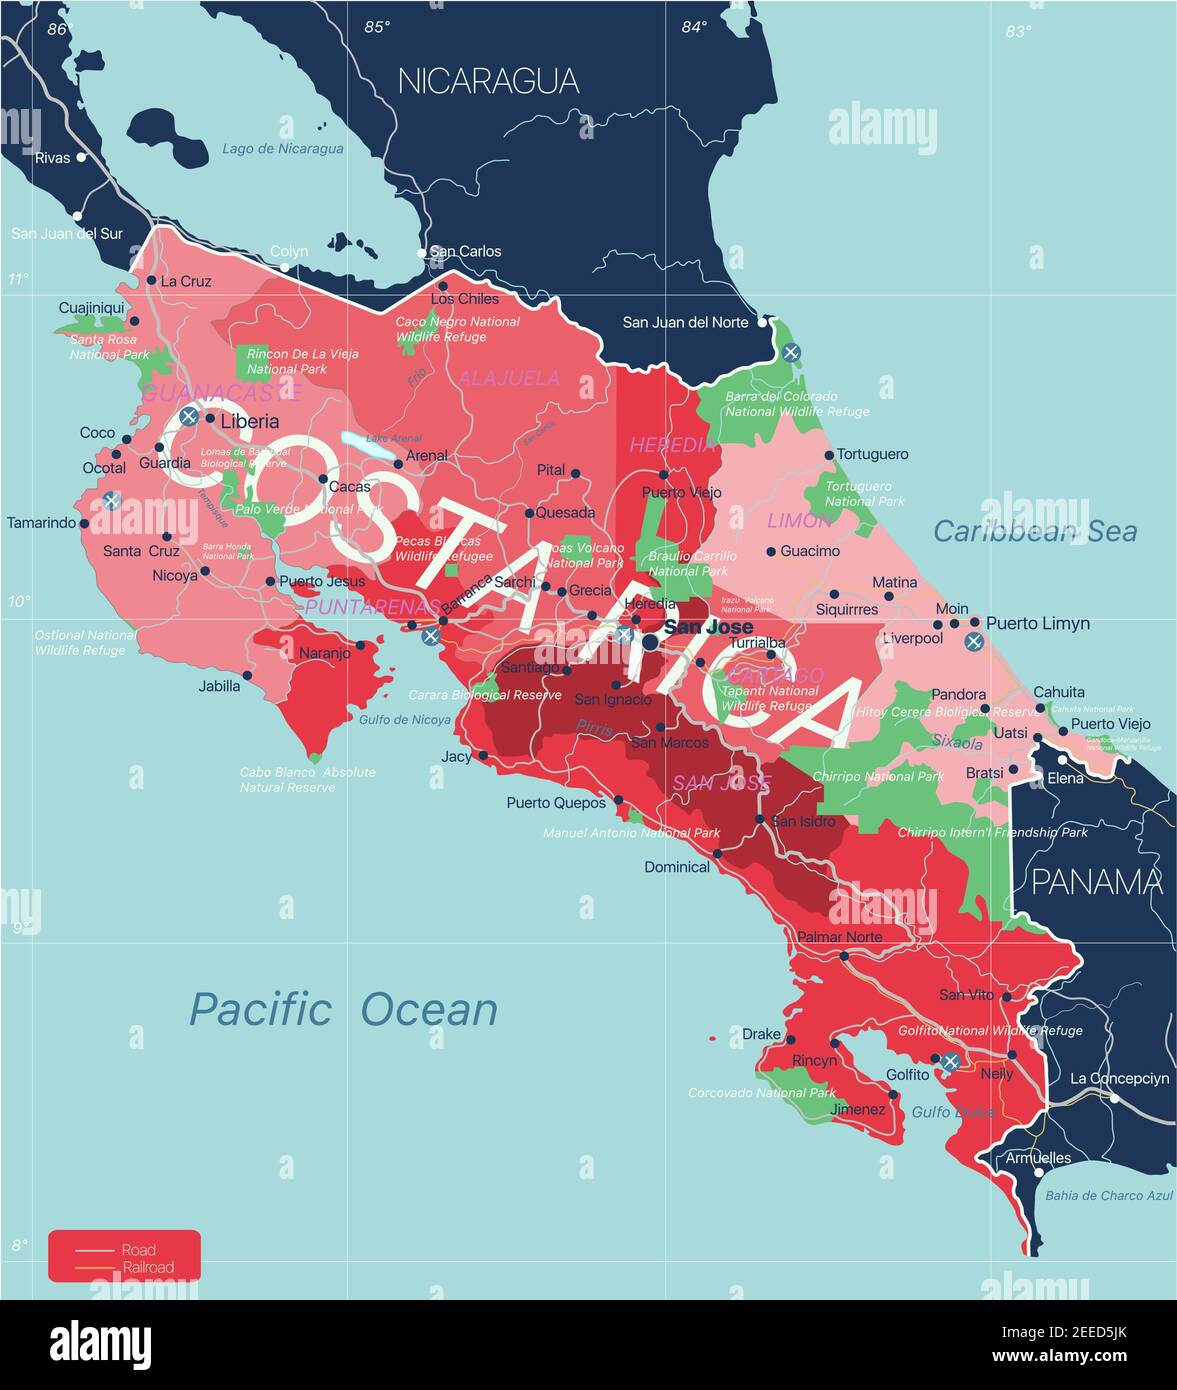 Paese Costa Rica Mappa dettagliata modificabile con regioni città e città, strade e ferrovie, siti geografici. File vettoriale EPS-10 Illustrazione Vettoriale